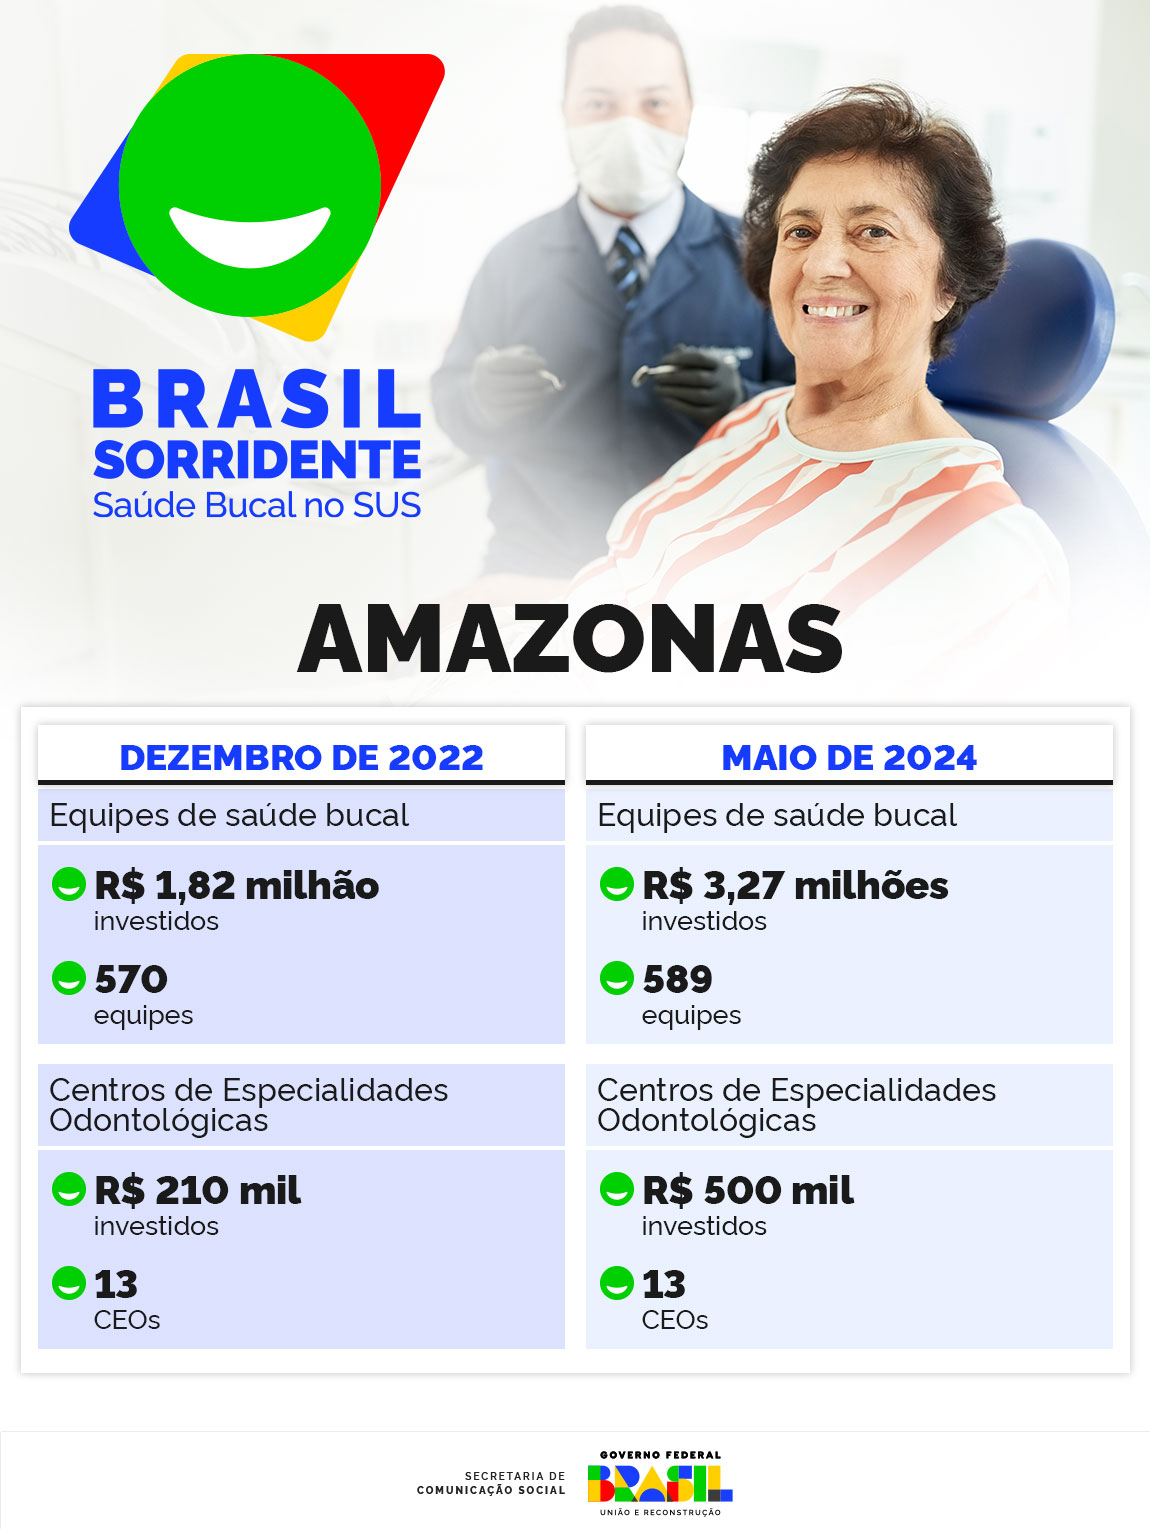 0729_AM_Info_Brasil_Sorridente.jpg